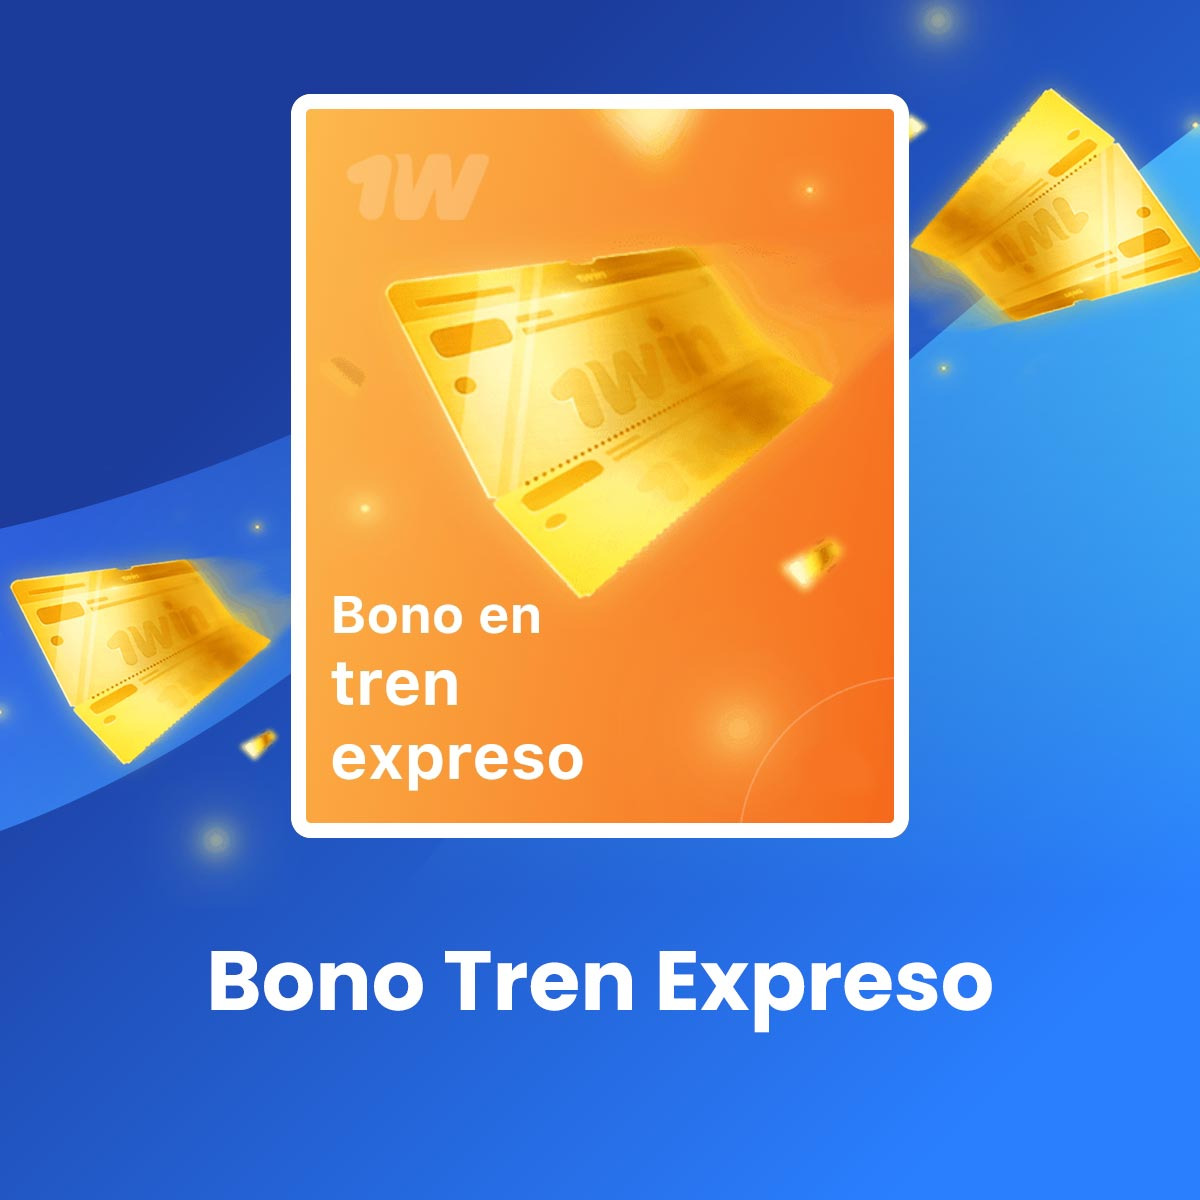 ¿Cómo puedo participar en la promoción Bono Tren Expreso en 1win Colombia?